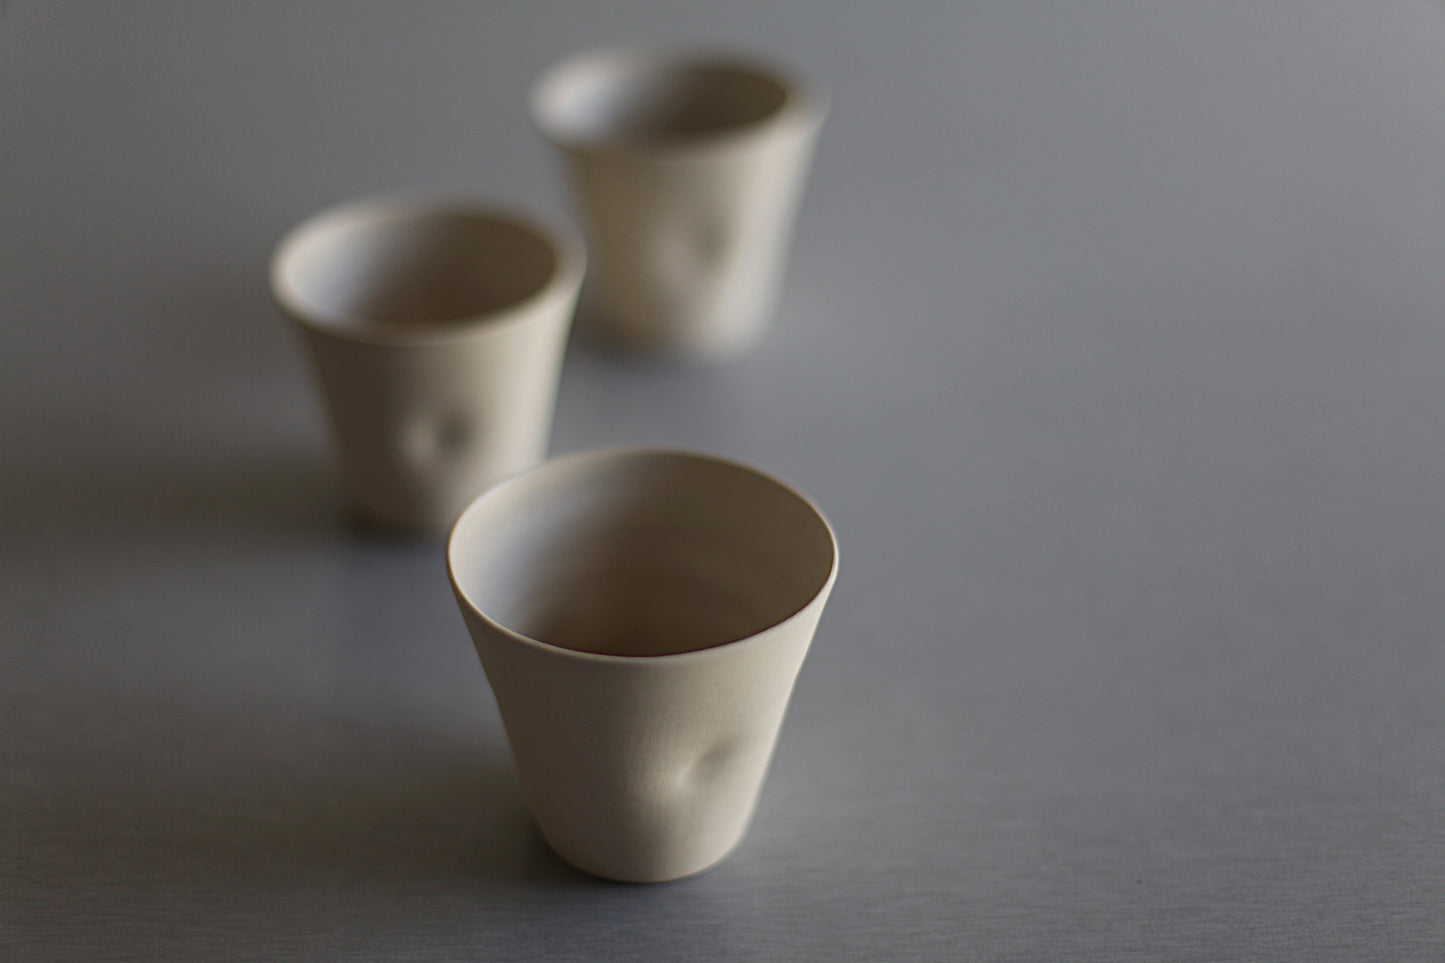 Flat white cup, coffee cup, cafe au lait cup, tasse de café au lait, ceramic tumbler - stoneware, 200 ml - 6.76 oz